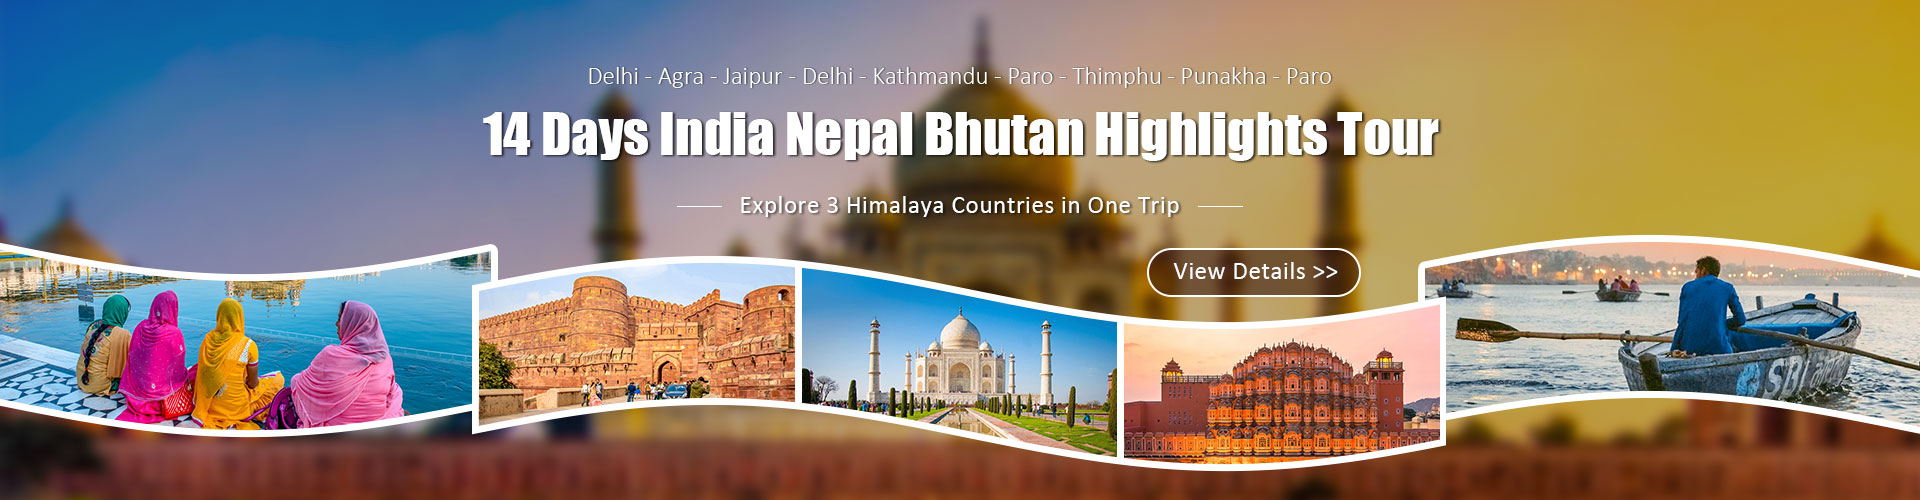 India Nepal Bhutan Tours